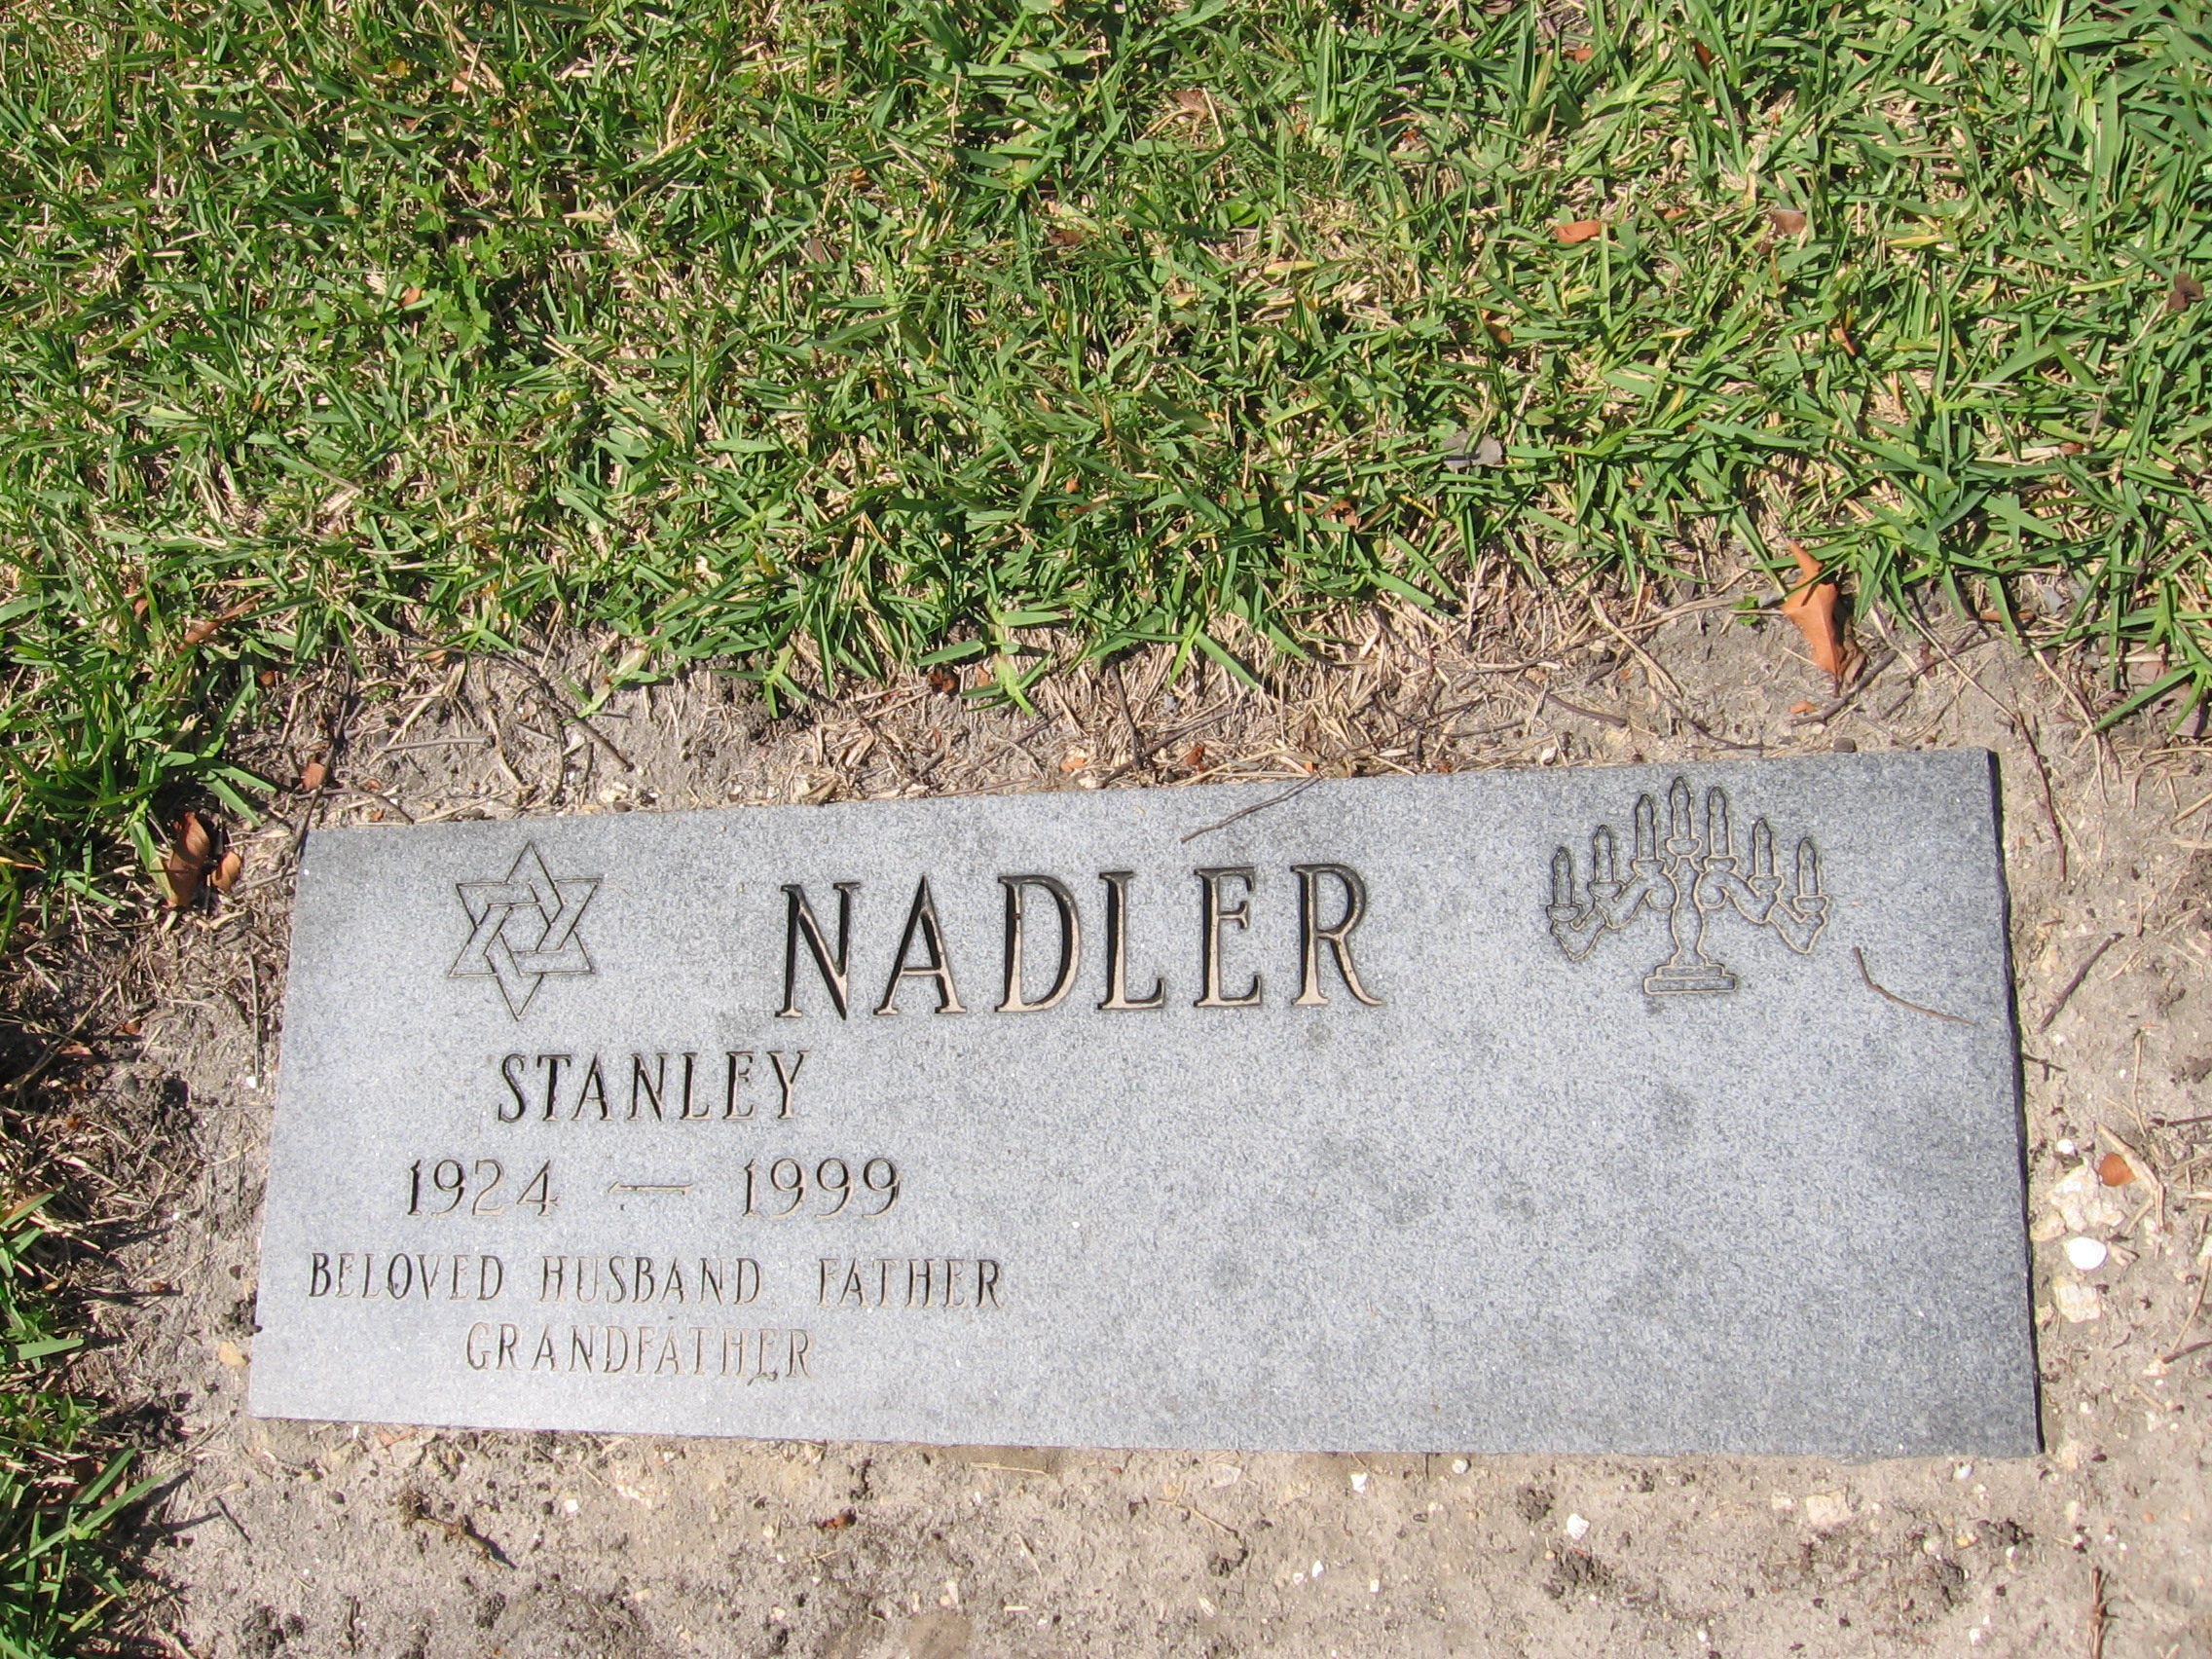 Stanley Nadler